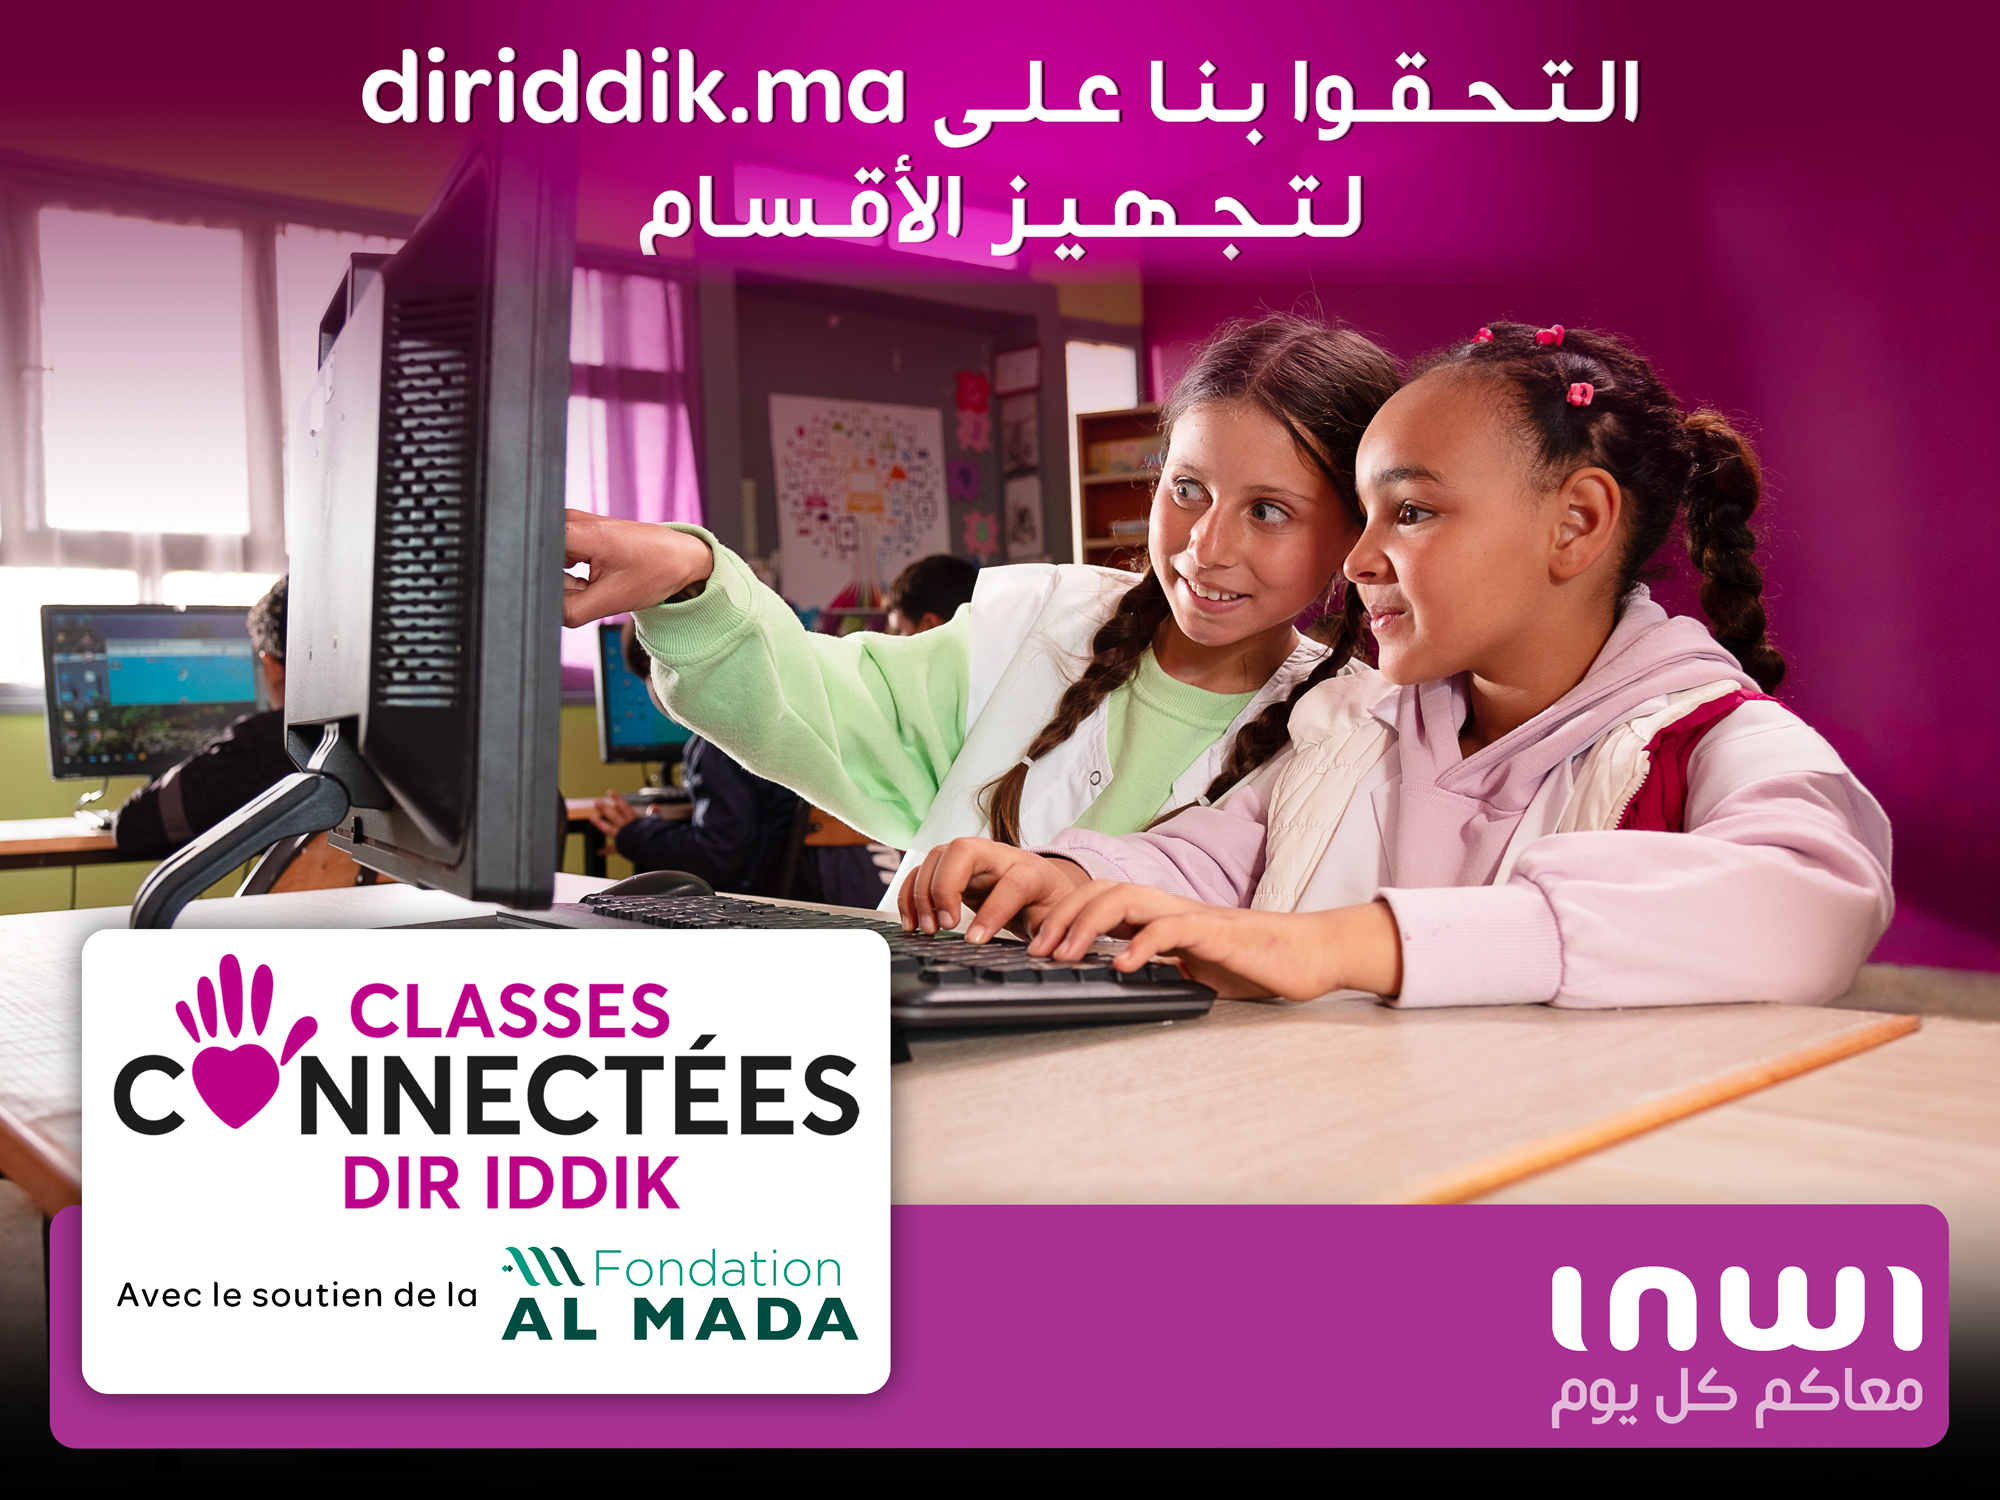 إطلاق النسخة الجديدة من مشروع "الأقسام المتصلة دير يديك" لتوفير تعليم رقمي متاح للجميع في المغرب